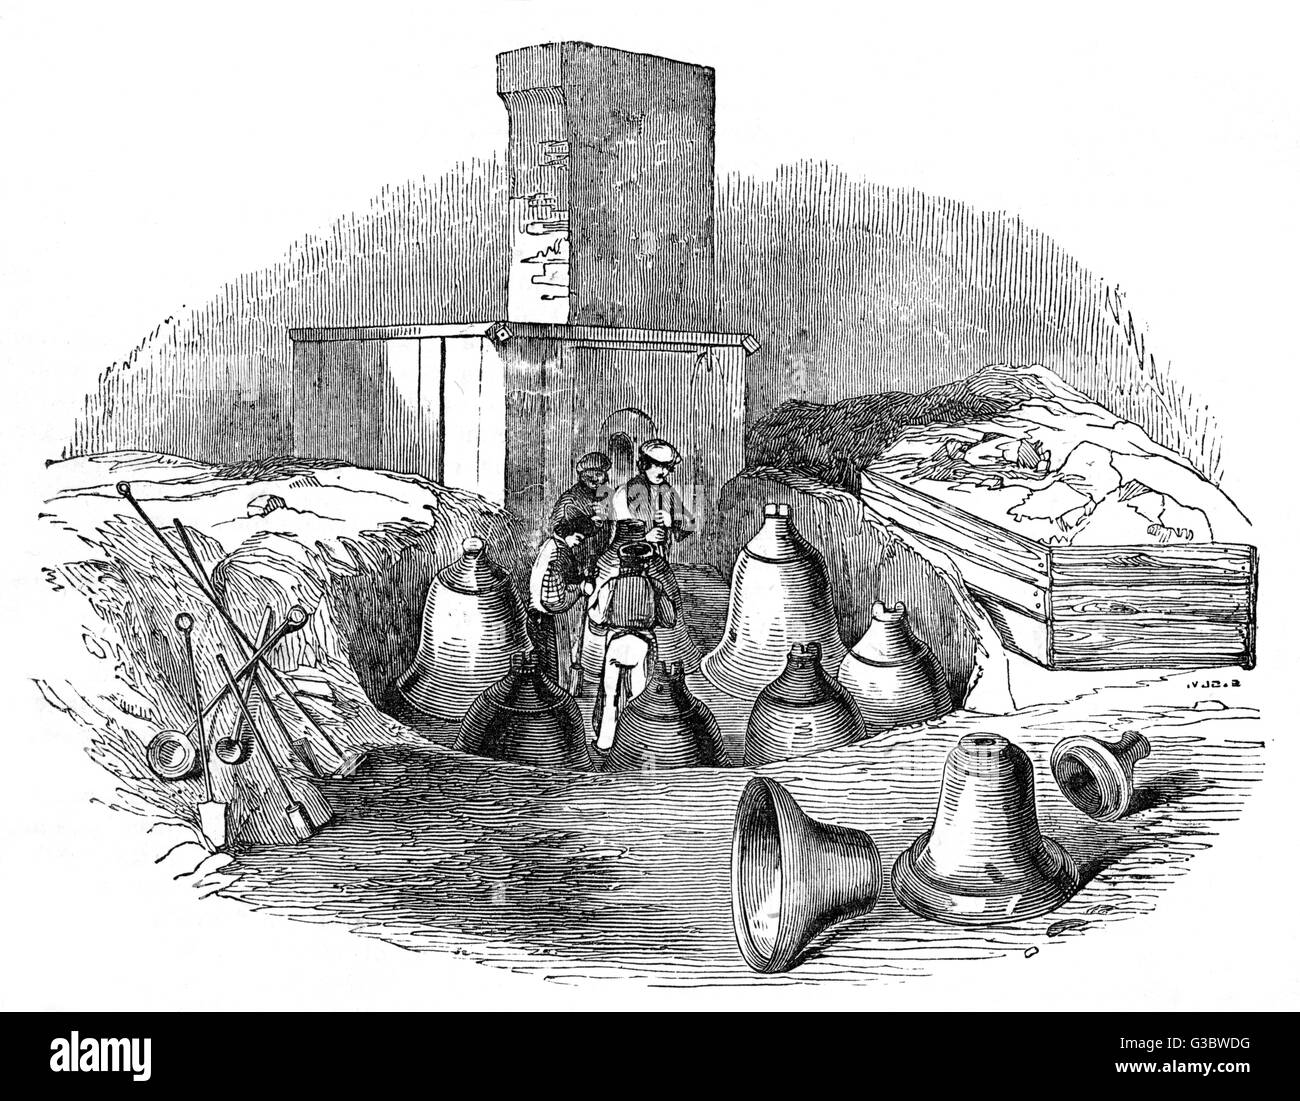 Un casting d'une fosse-bell foundry, ch. 1830. Date : ch. 1830 Banque D'Images